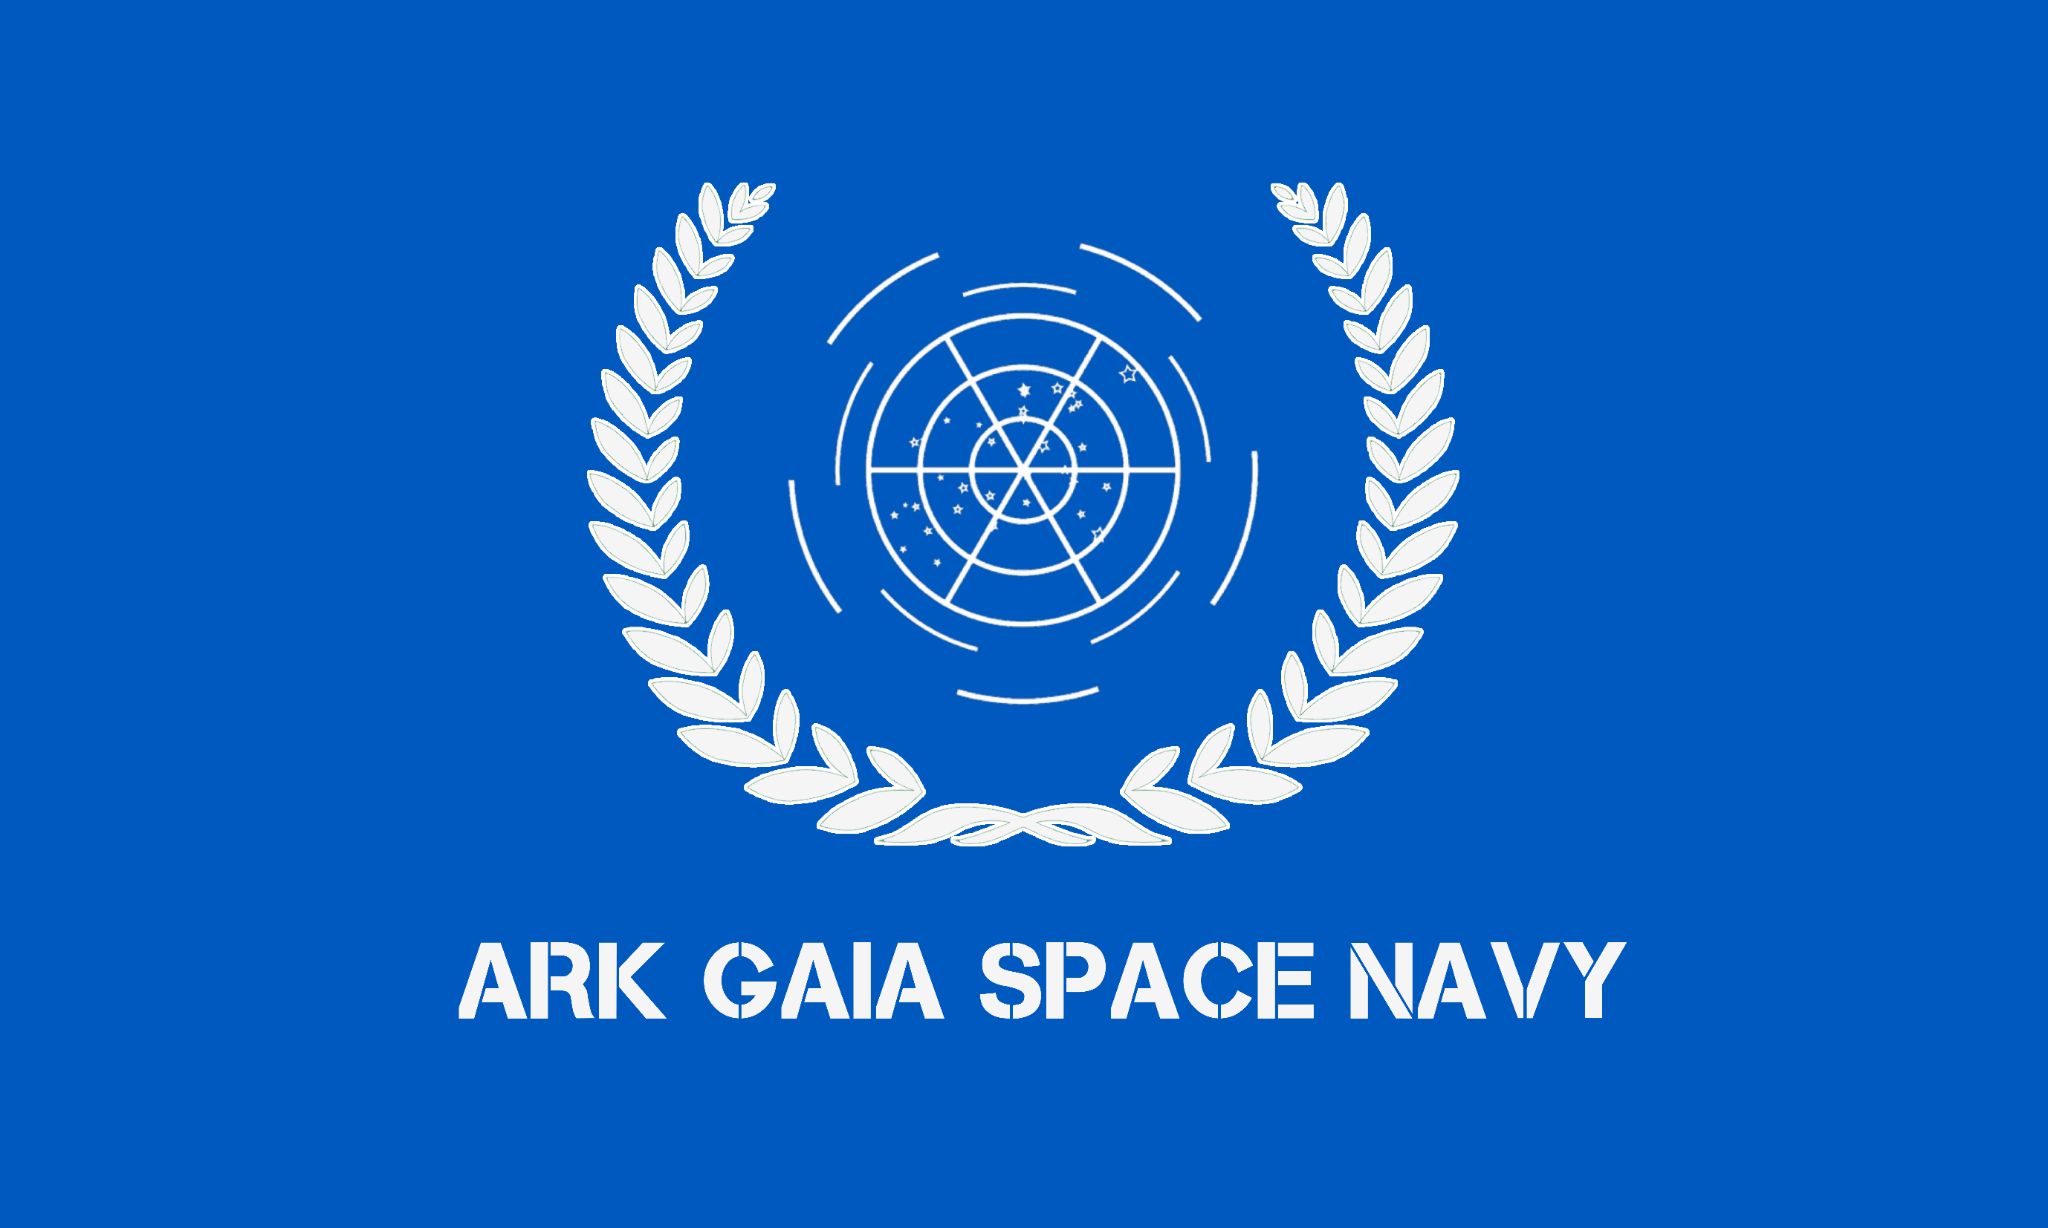 Ark Gaia Space Navy.jpg